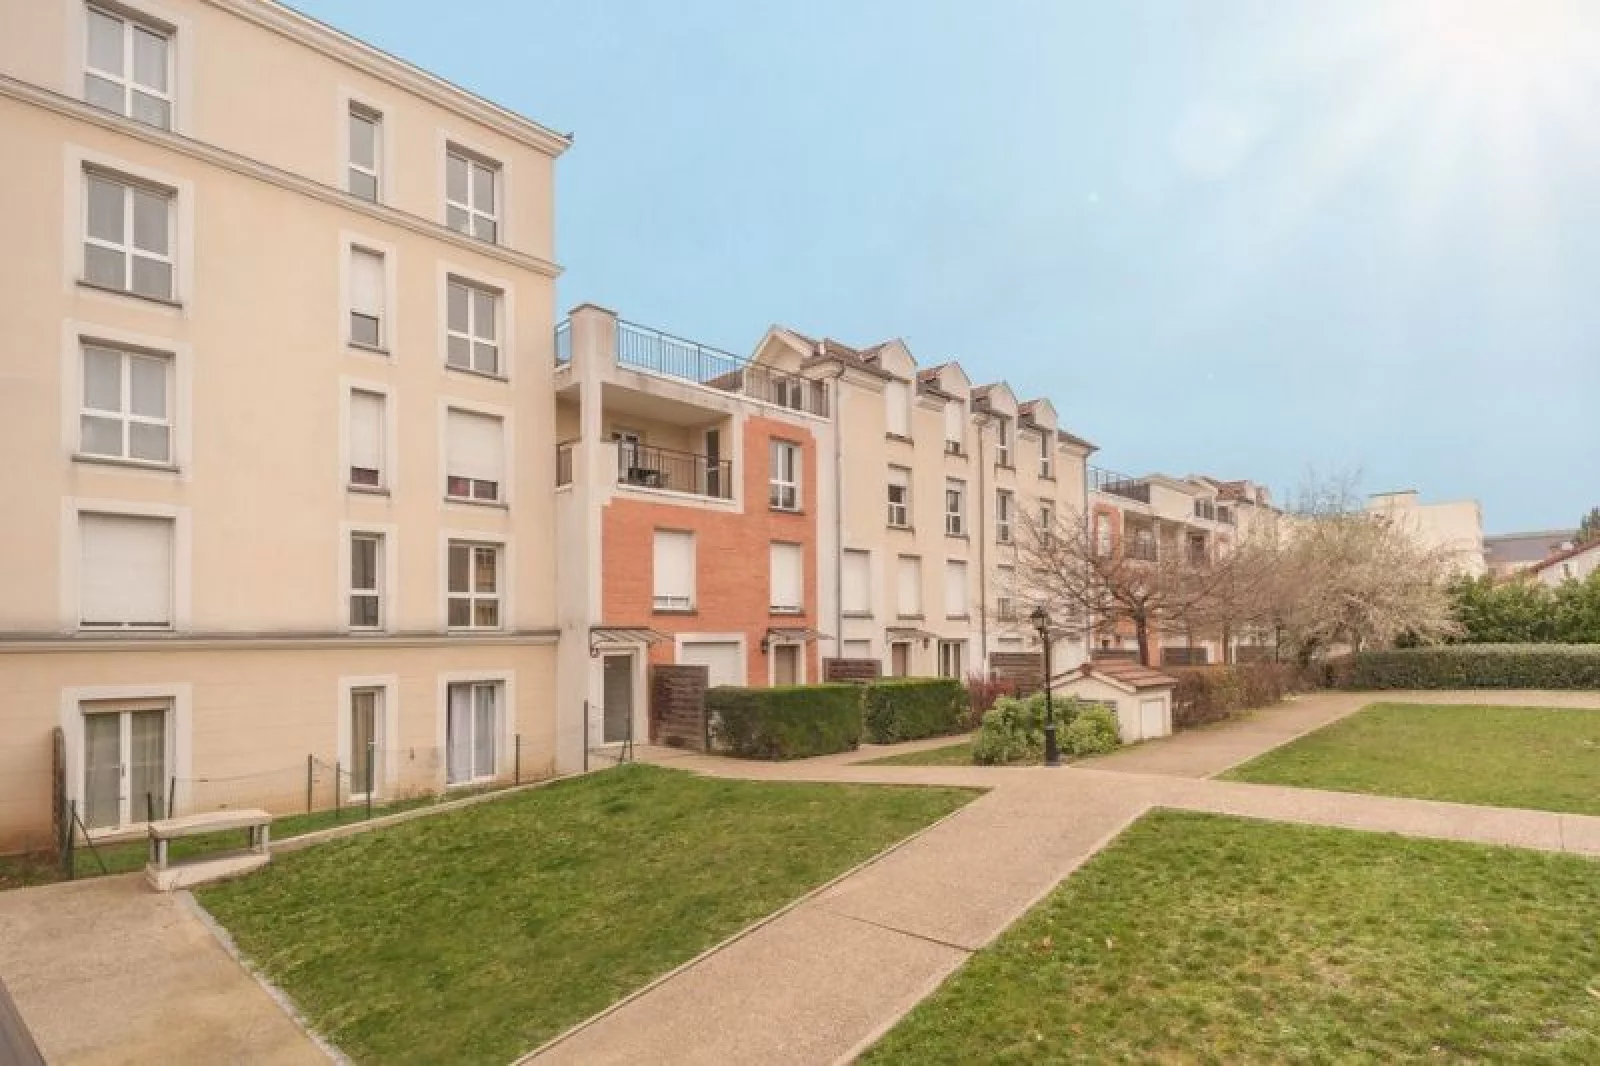 Location appartement meublé duplex 4 pièces 94m² (Paris est - Bry s/ Marne)